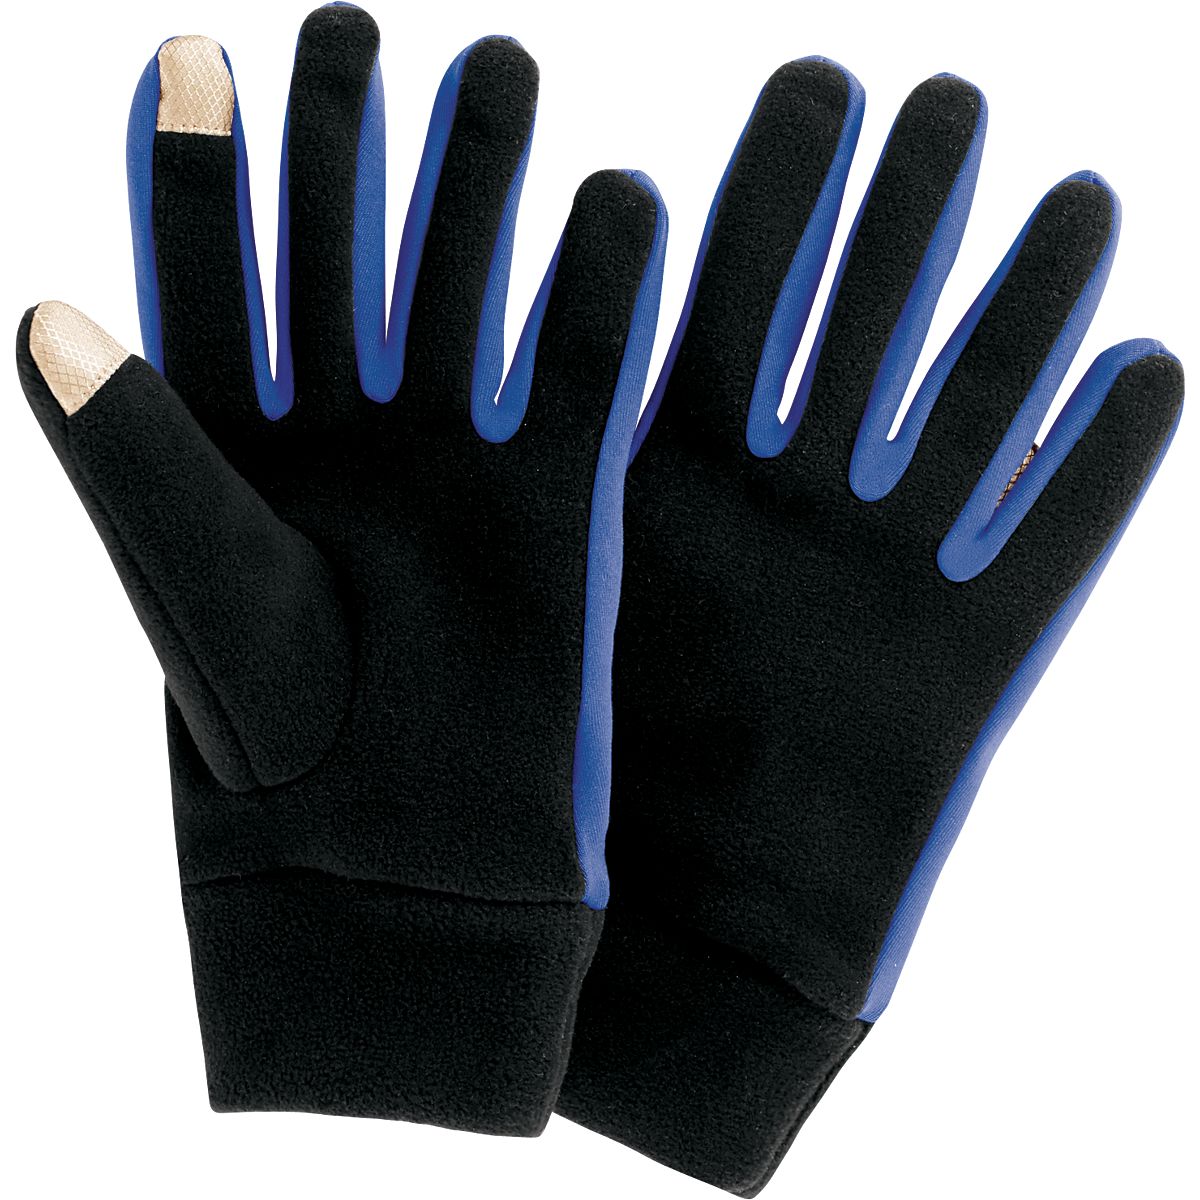 Bolster Gloves